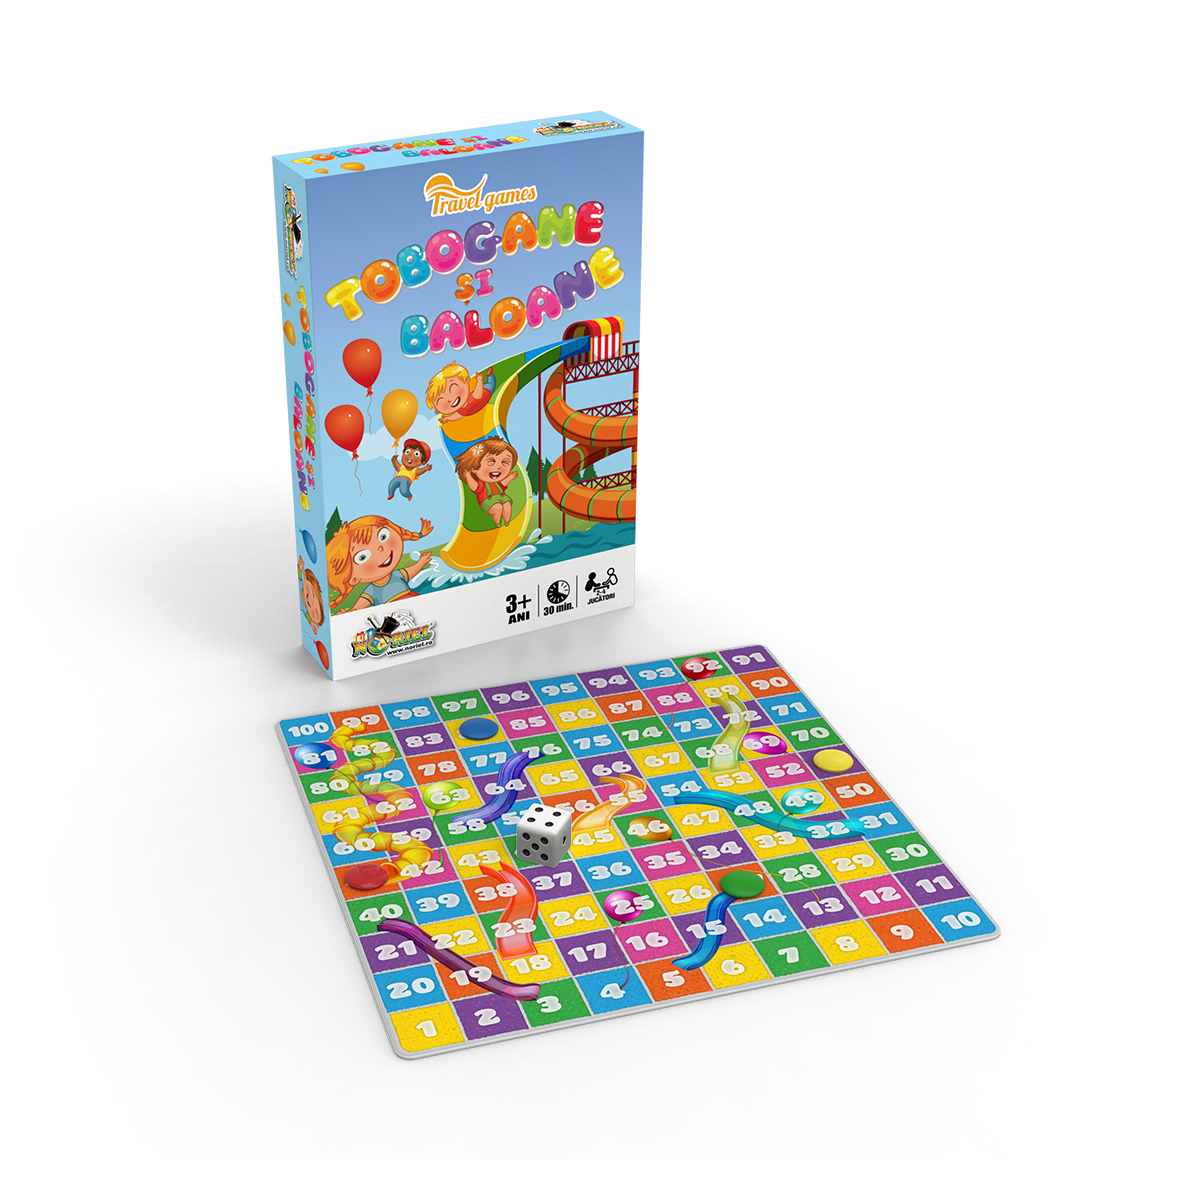 Joc de societate Noriel – Tobogane si baloane, Mini Noriel Games imagine 2022